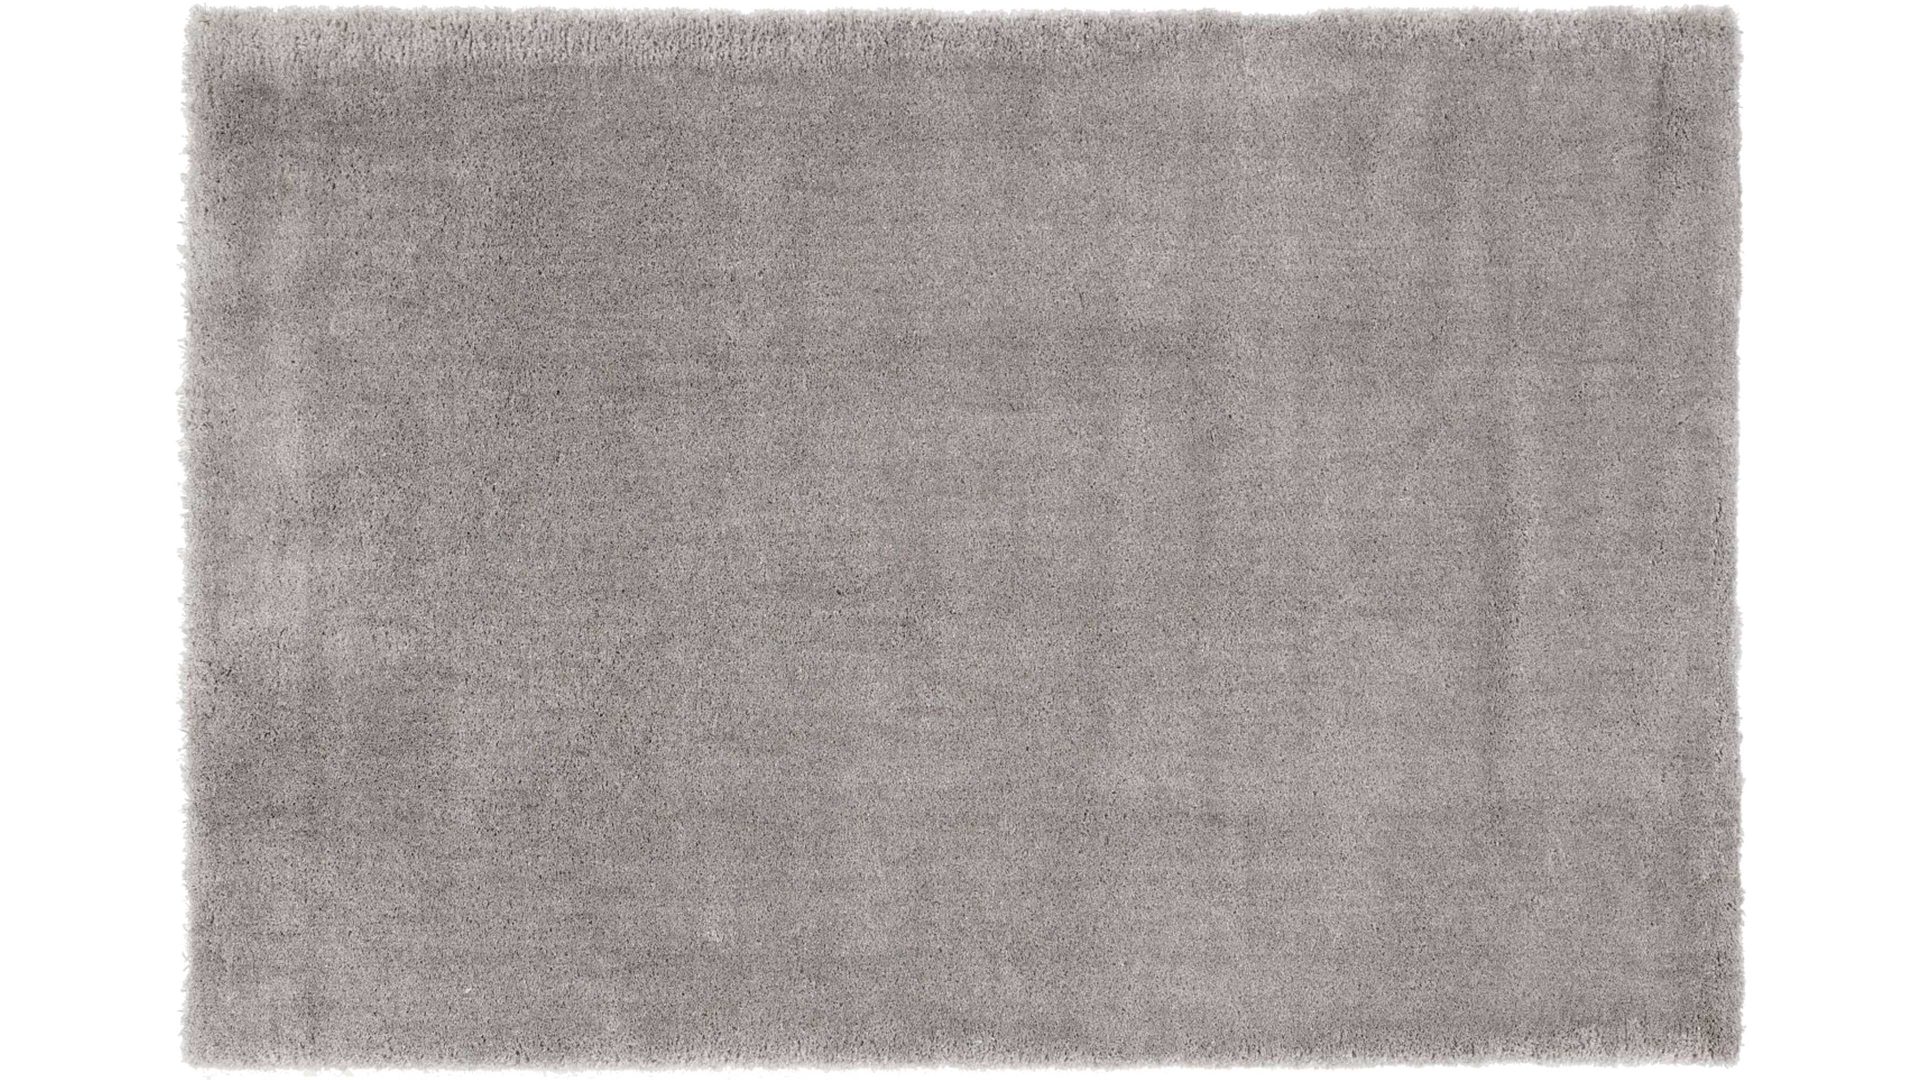 Shaggyteppich Oci aus Kunstfaser in Grau Shaggyteppich Royal Shaggy für Ihre Wohnaccessoires graue Kunstfaser – ca. 120 x 170 cm